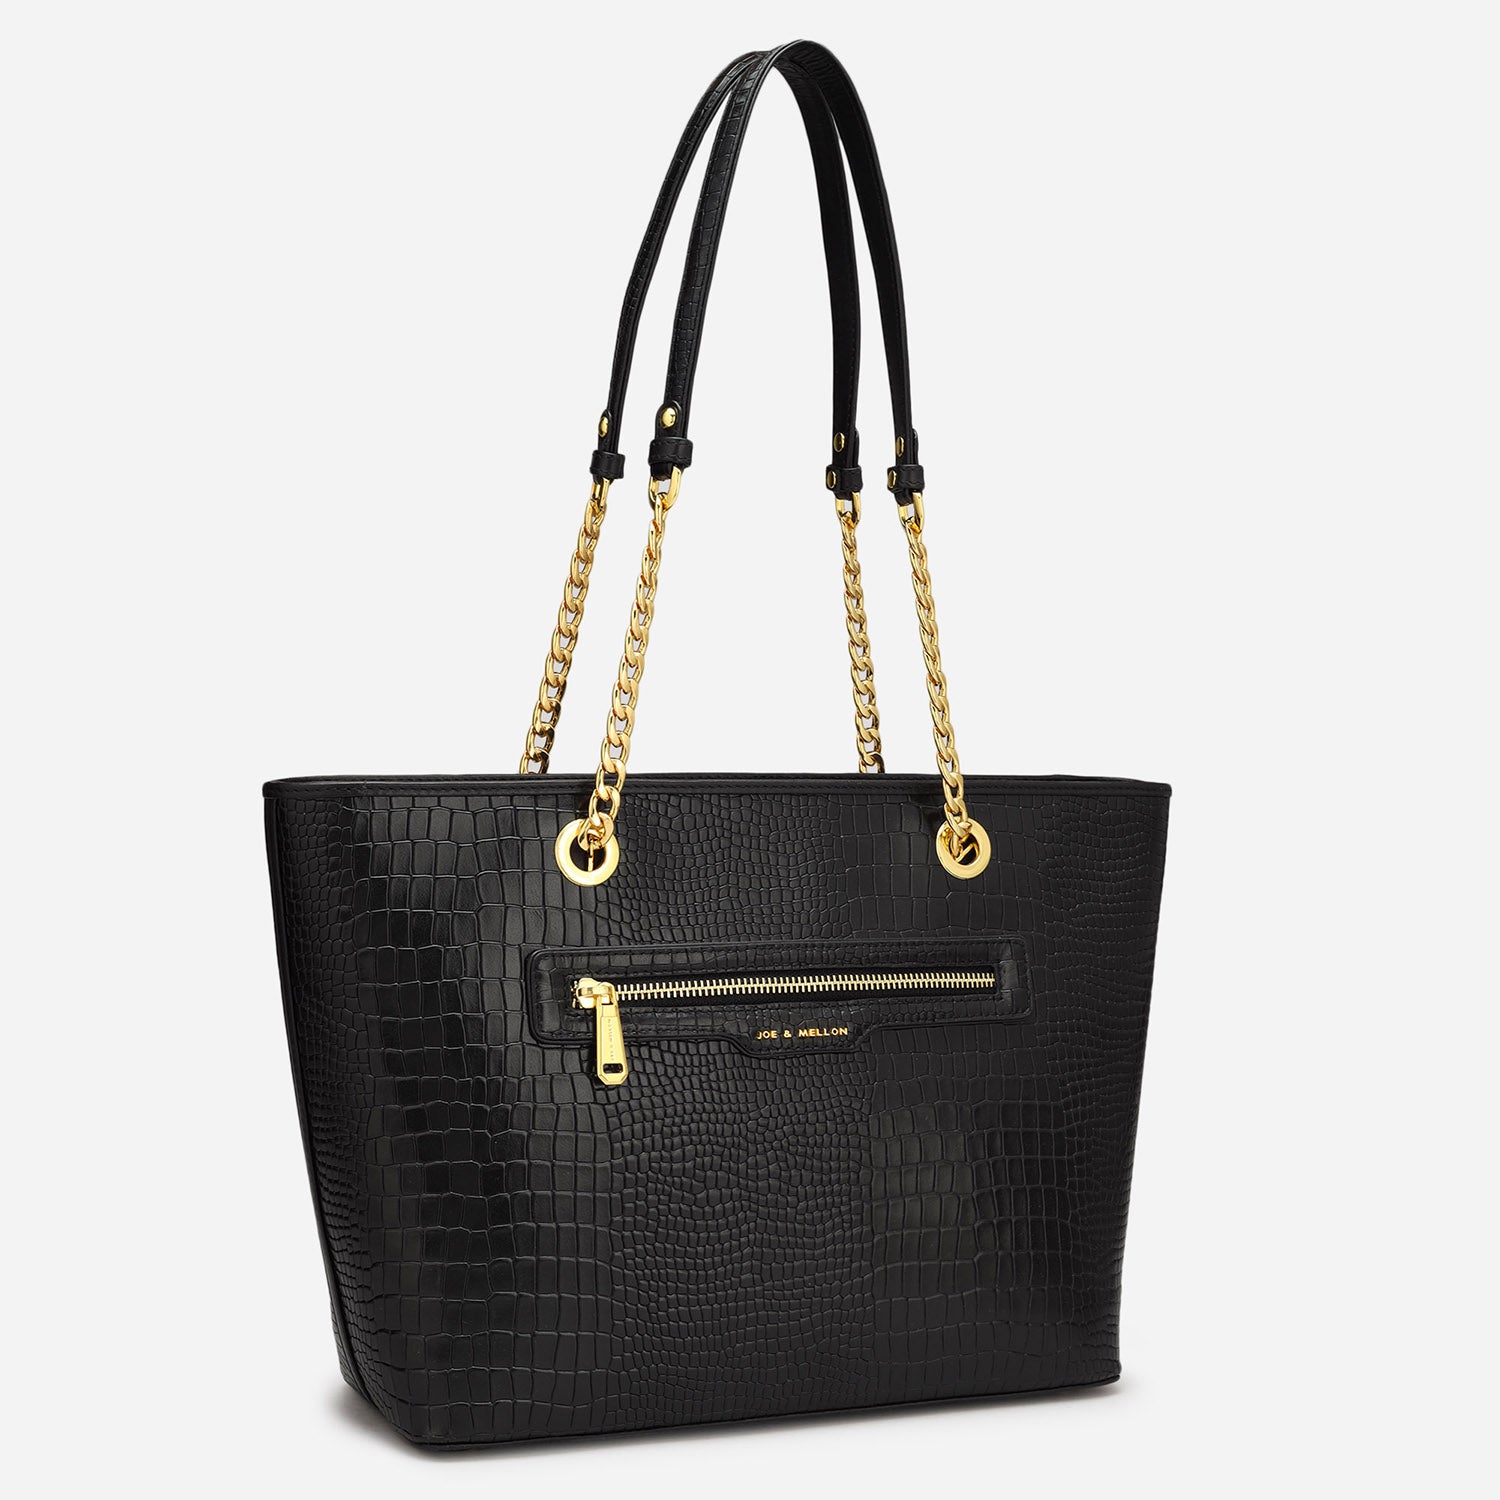 Olivia Ladies Bag - Black